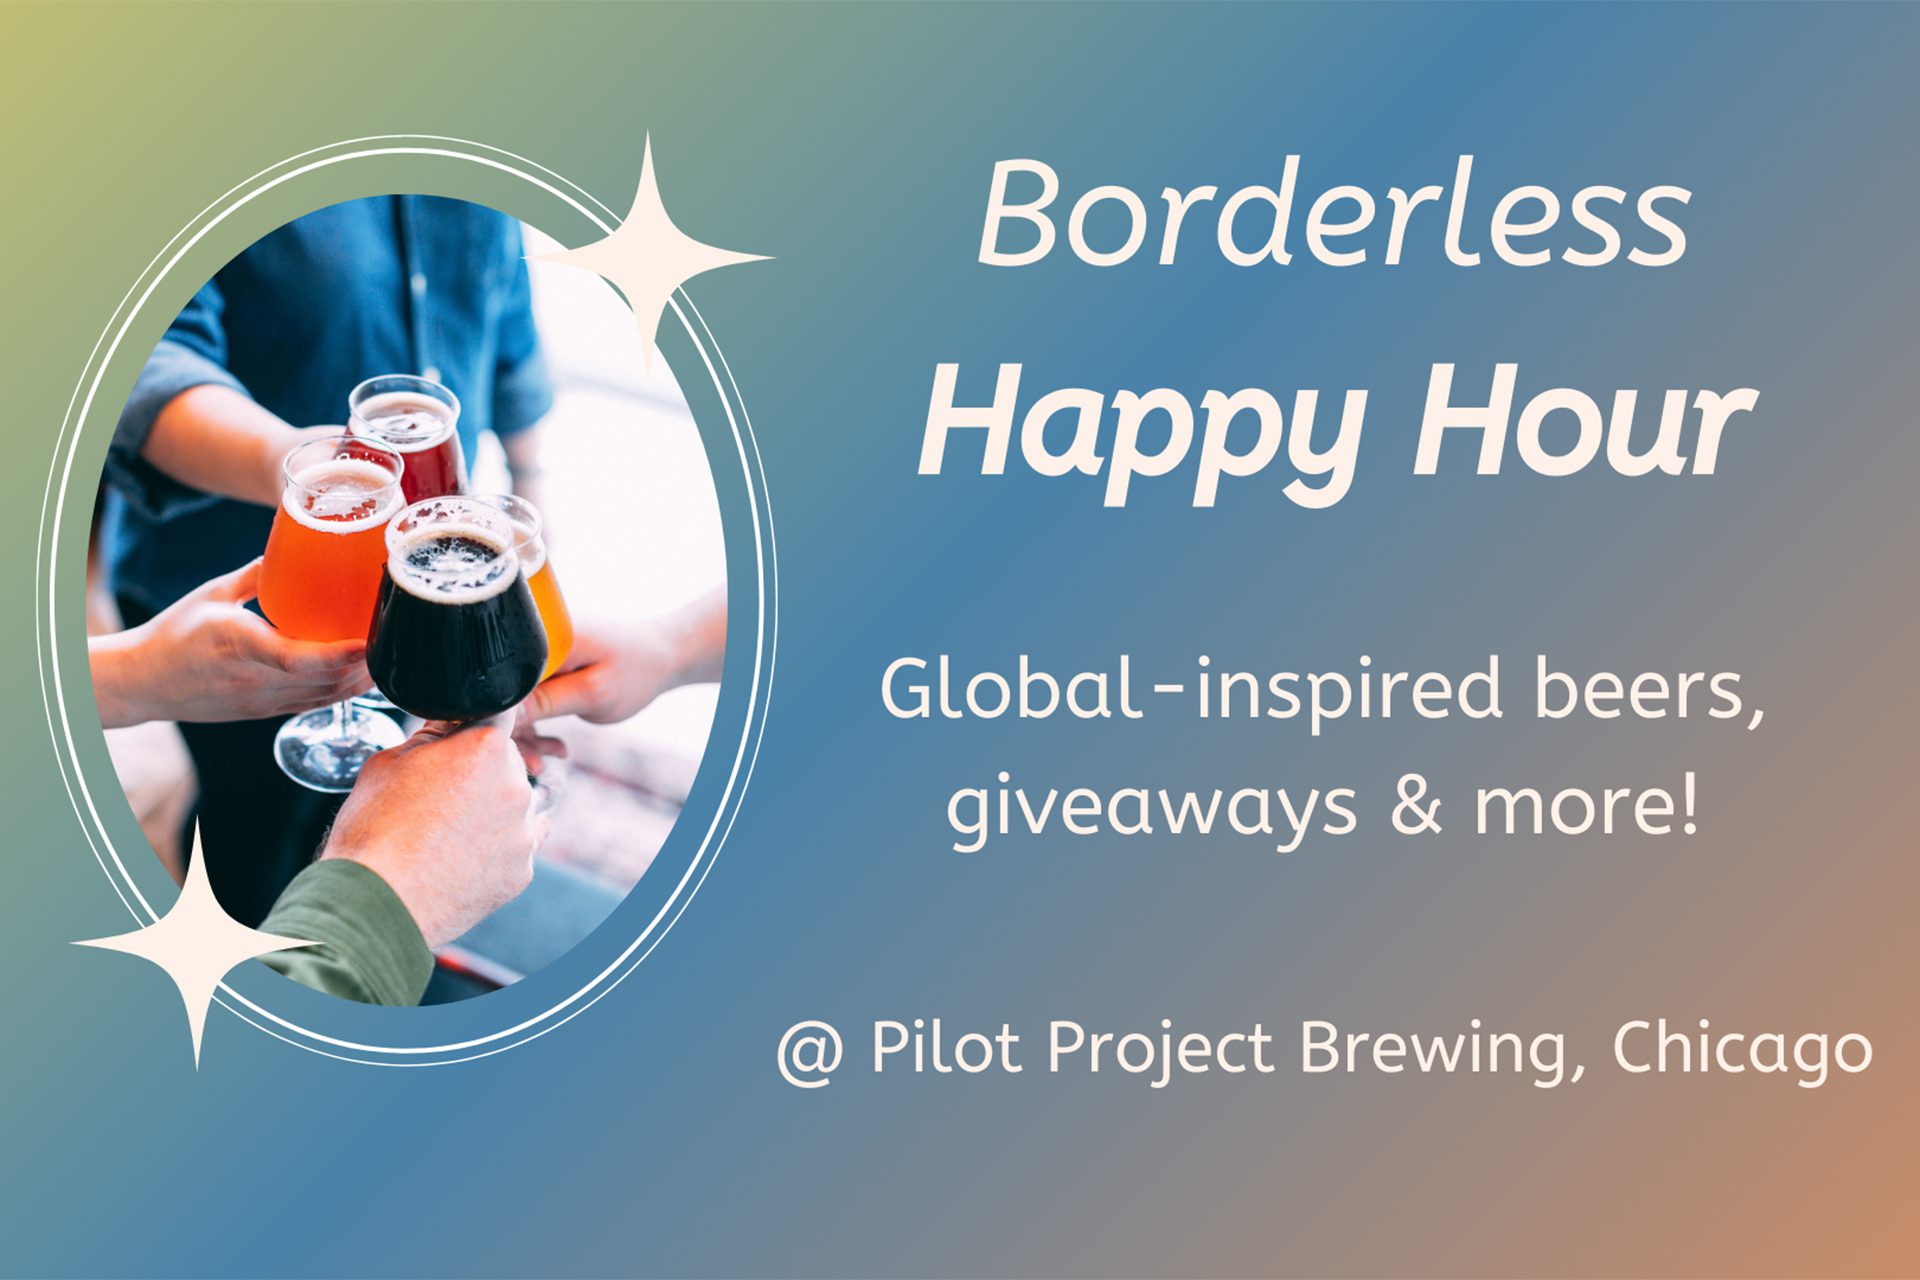 hands cheersing beer and "Borderless happy hour"